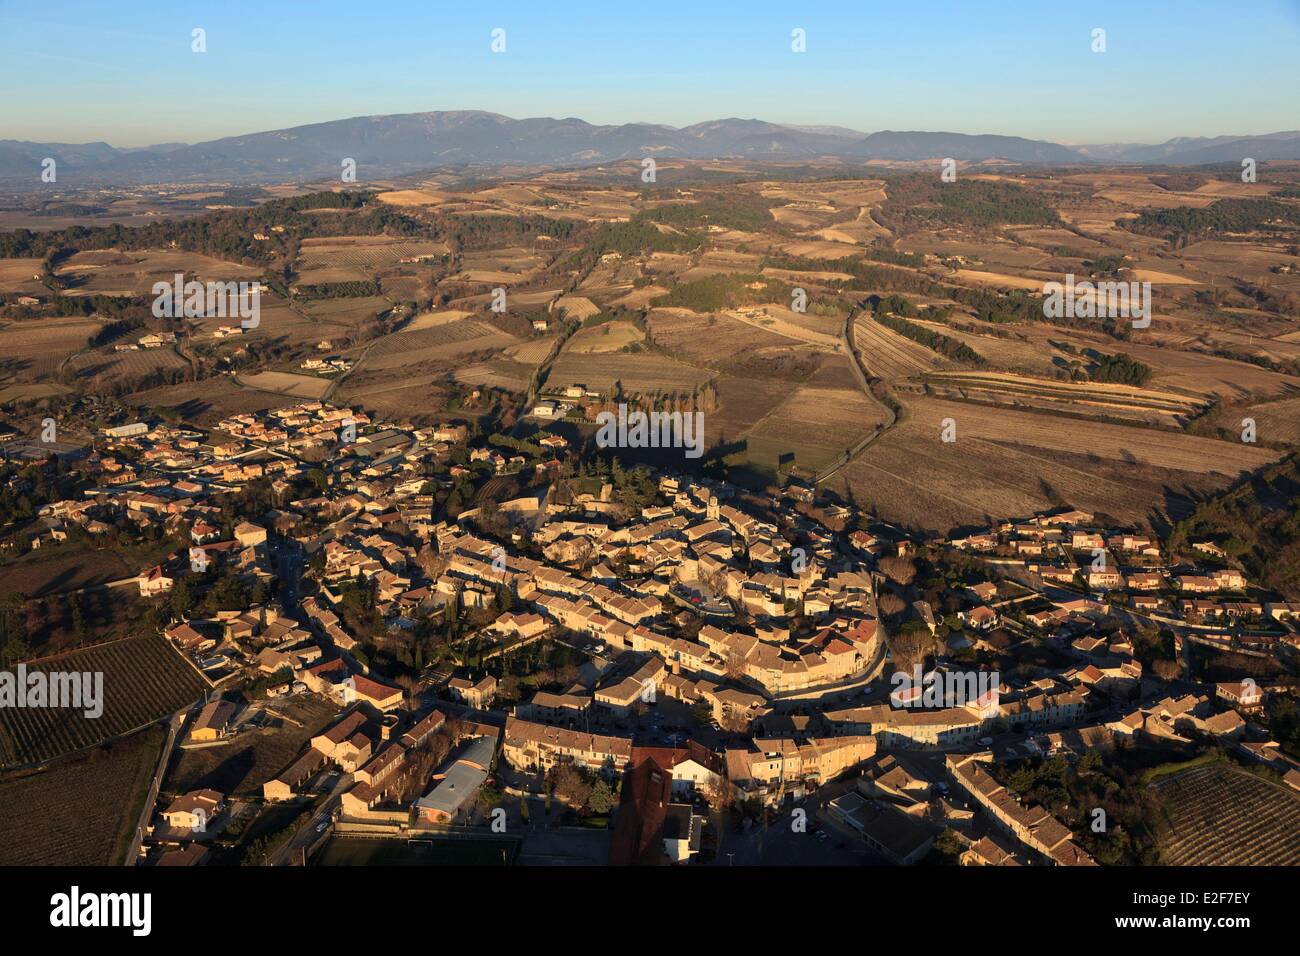 France, Vaucluse, Enclave des Papes, Visan (aerial view) Stock Photo